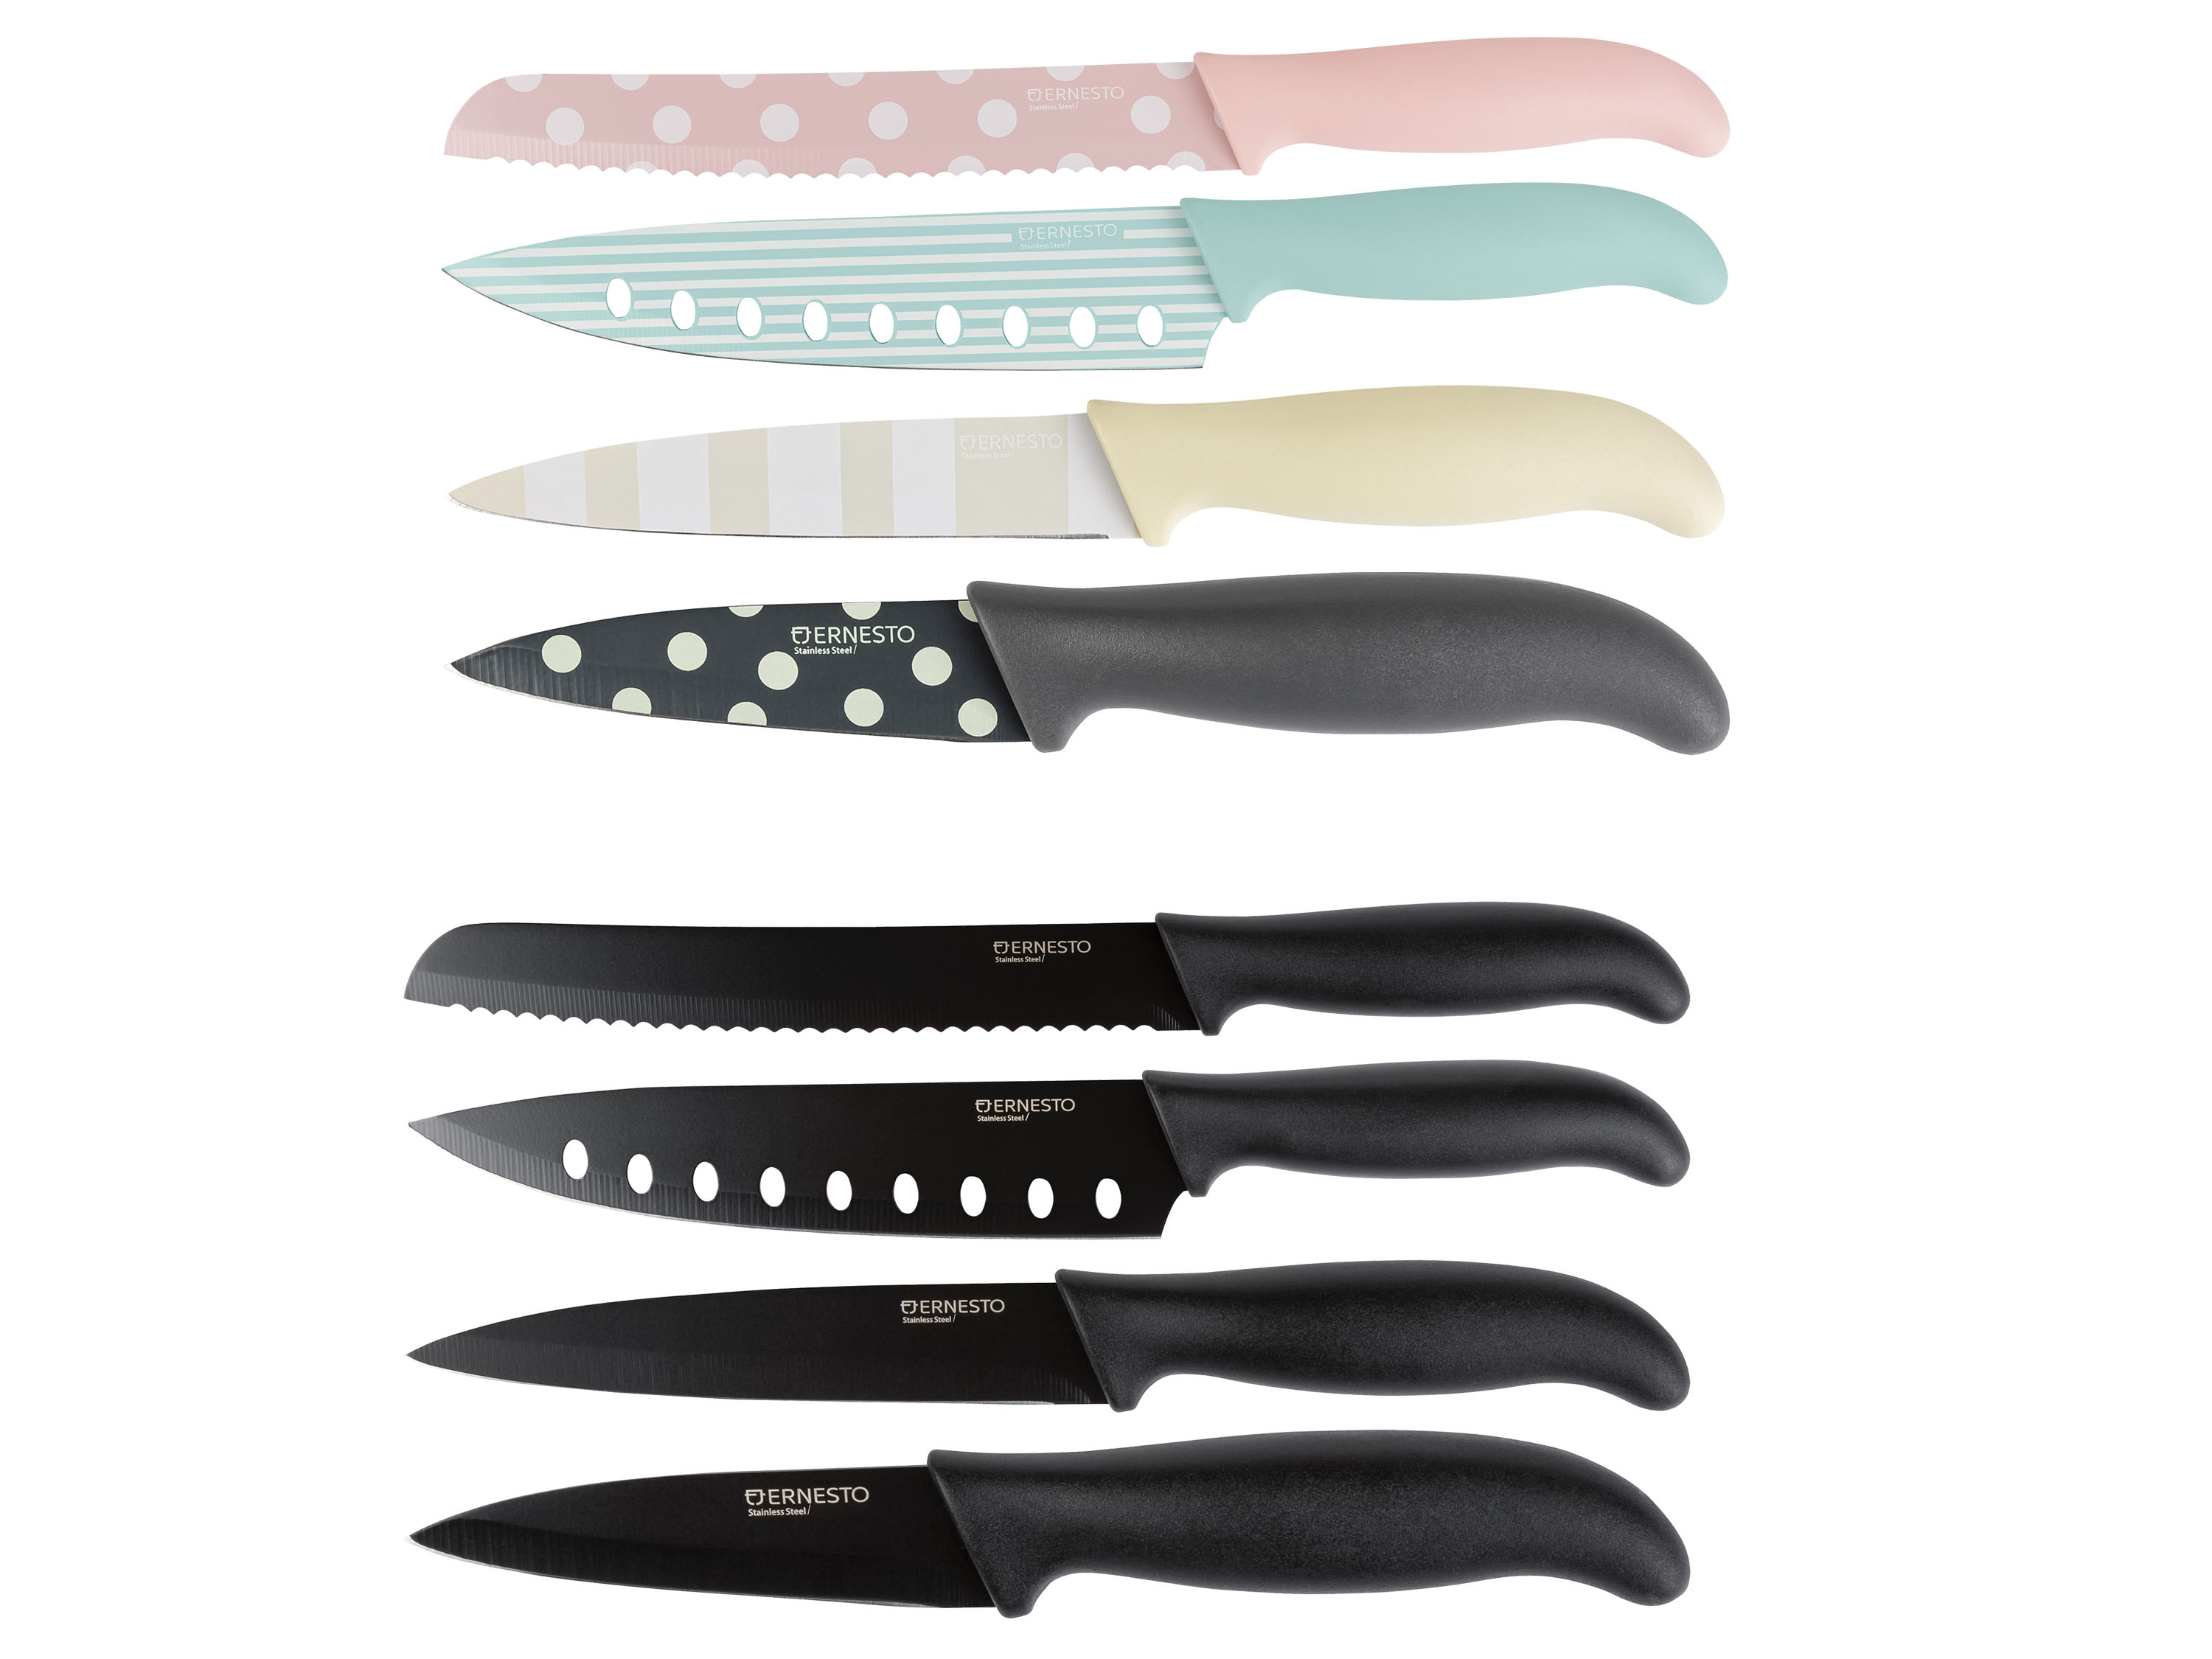 Zdjęcia - Nóż kuchenny Ernesto ® Zestaw noży ze stali nierdzewnej, 4 elementy 